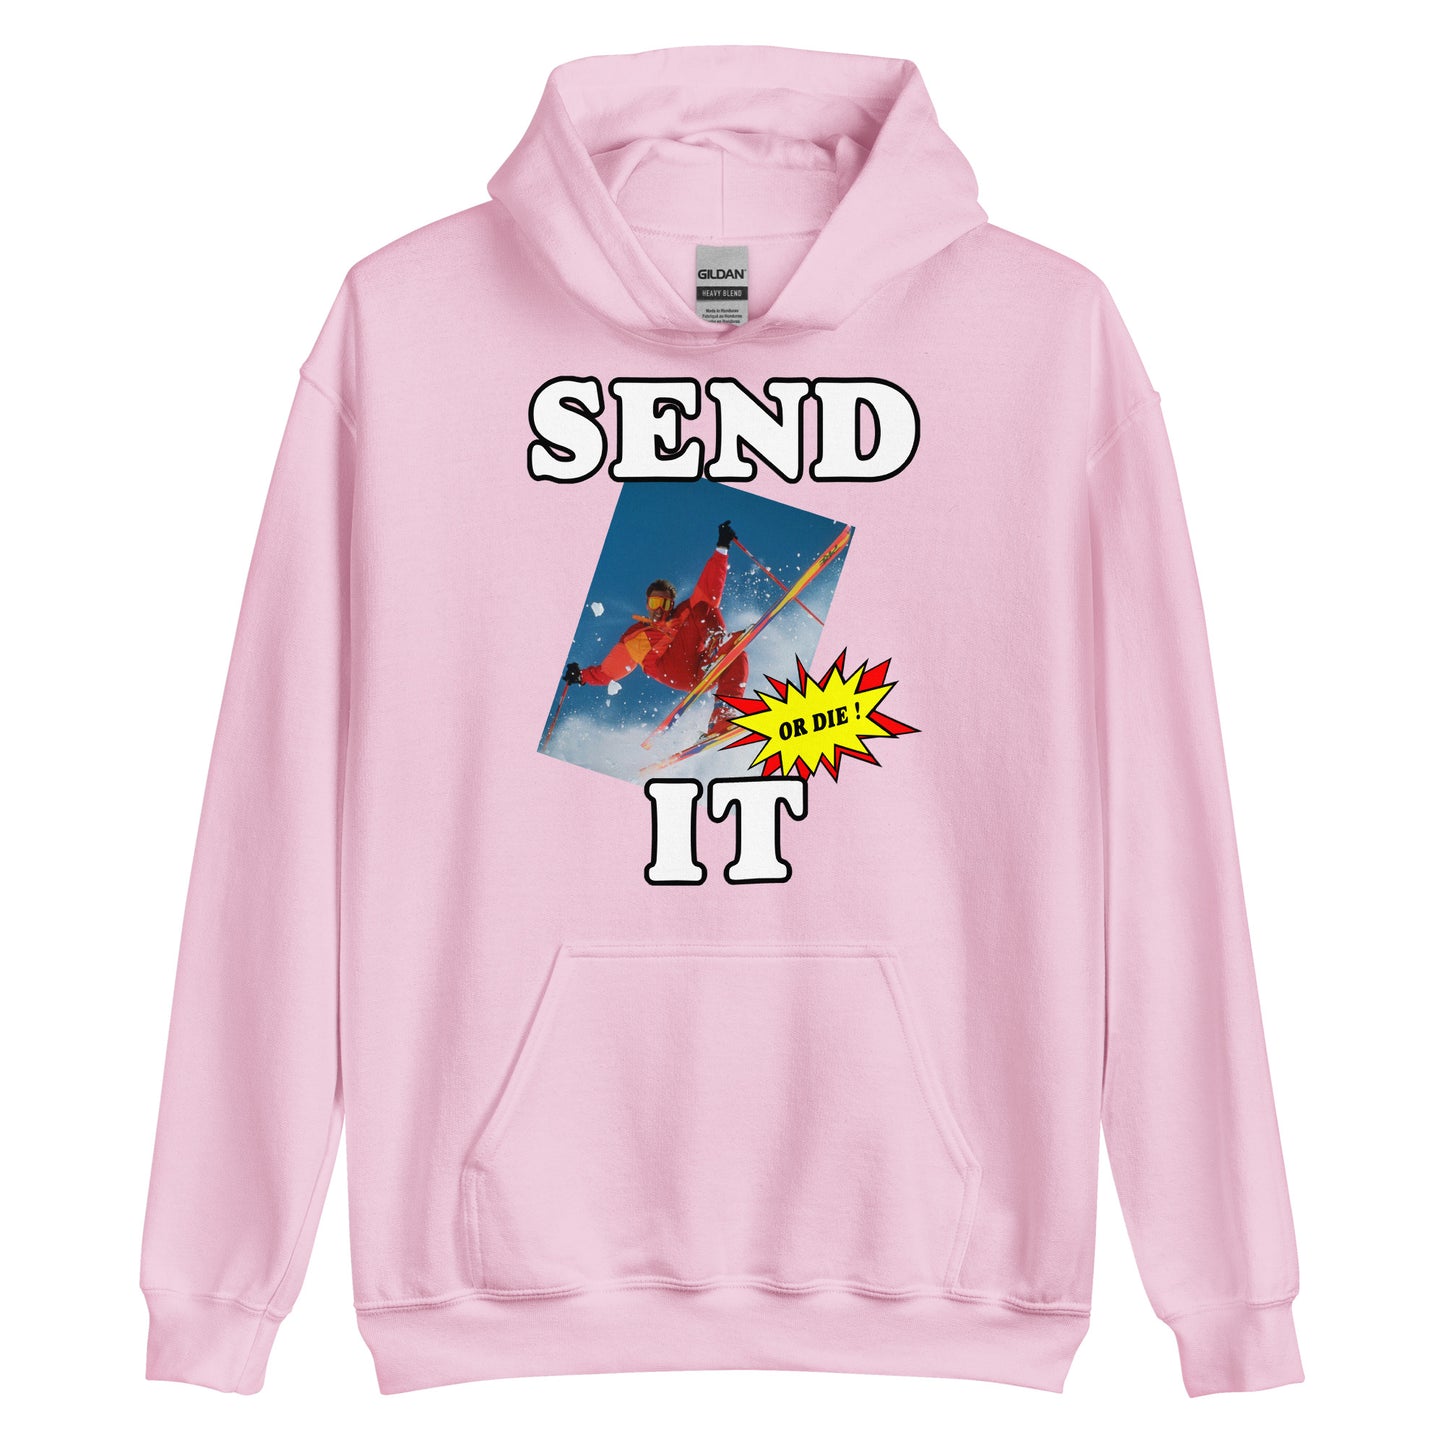 Send it or die extreme skiier printed hoodie by Whistler Shirts